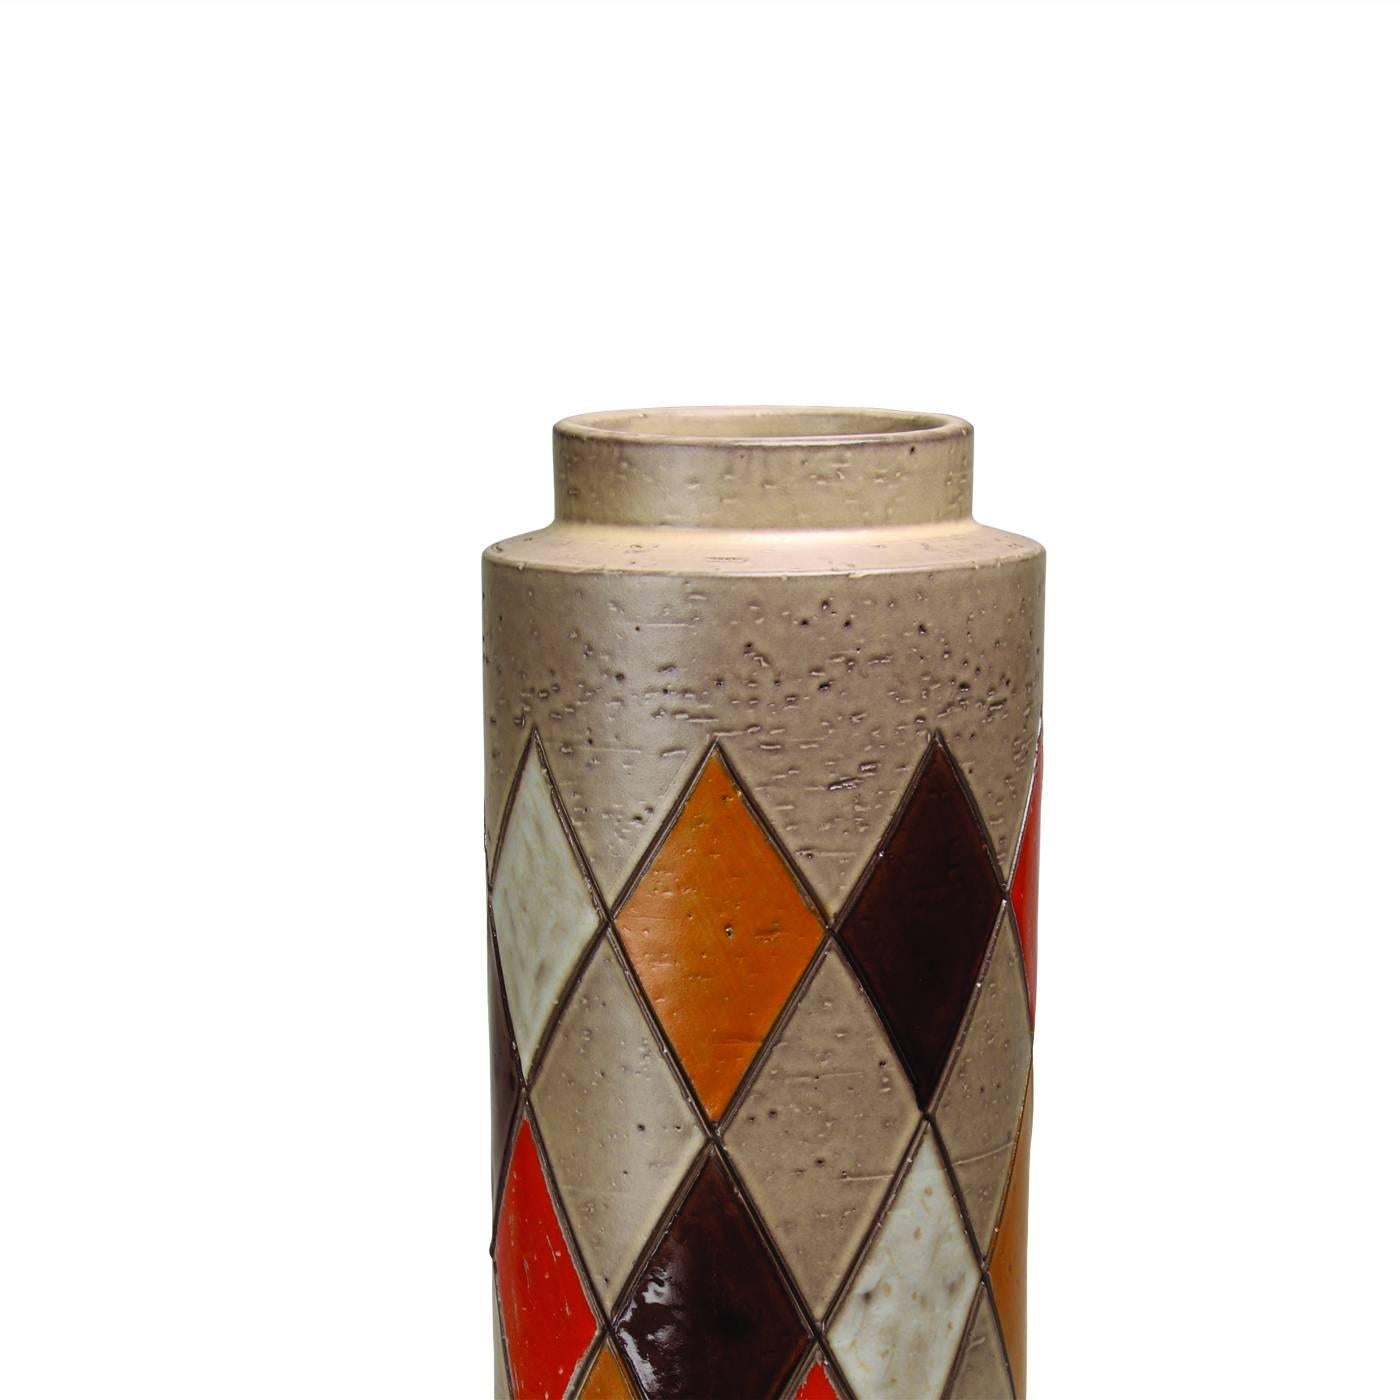 Diese zylindrische Vase aus weißem Ton ist Teil einer limitierten Auflage von 149 Stück, die 1961 vom damaligen künstlerischen Leiter von Bitossi, Aldo Londi, entworfen wurde. Die unregelmäßige Oberfläche der Vase ist in der Mitte des Körpers mit